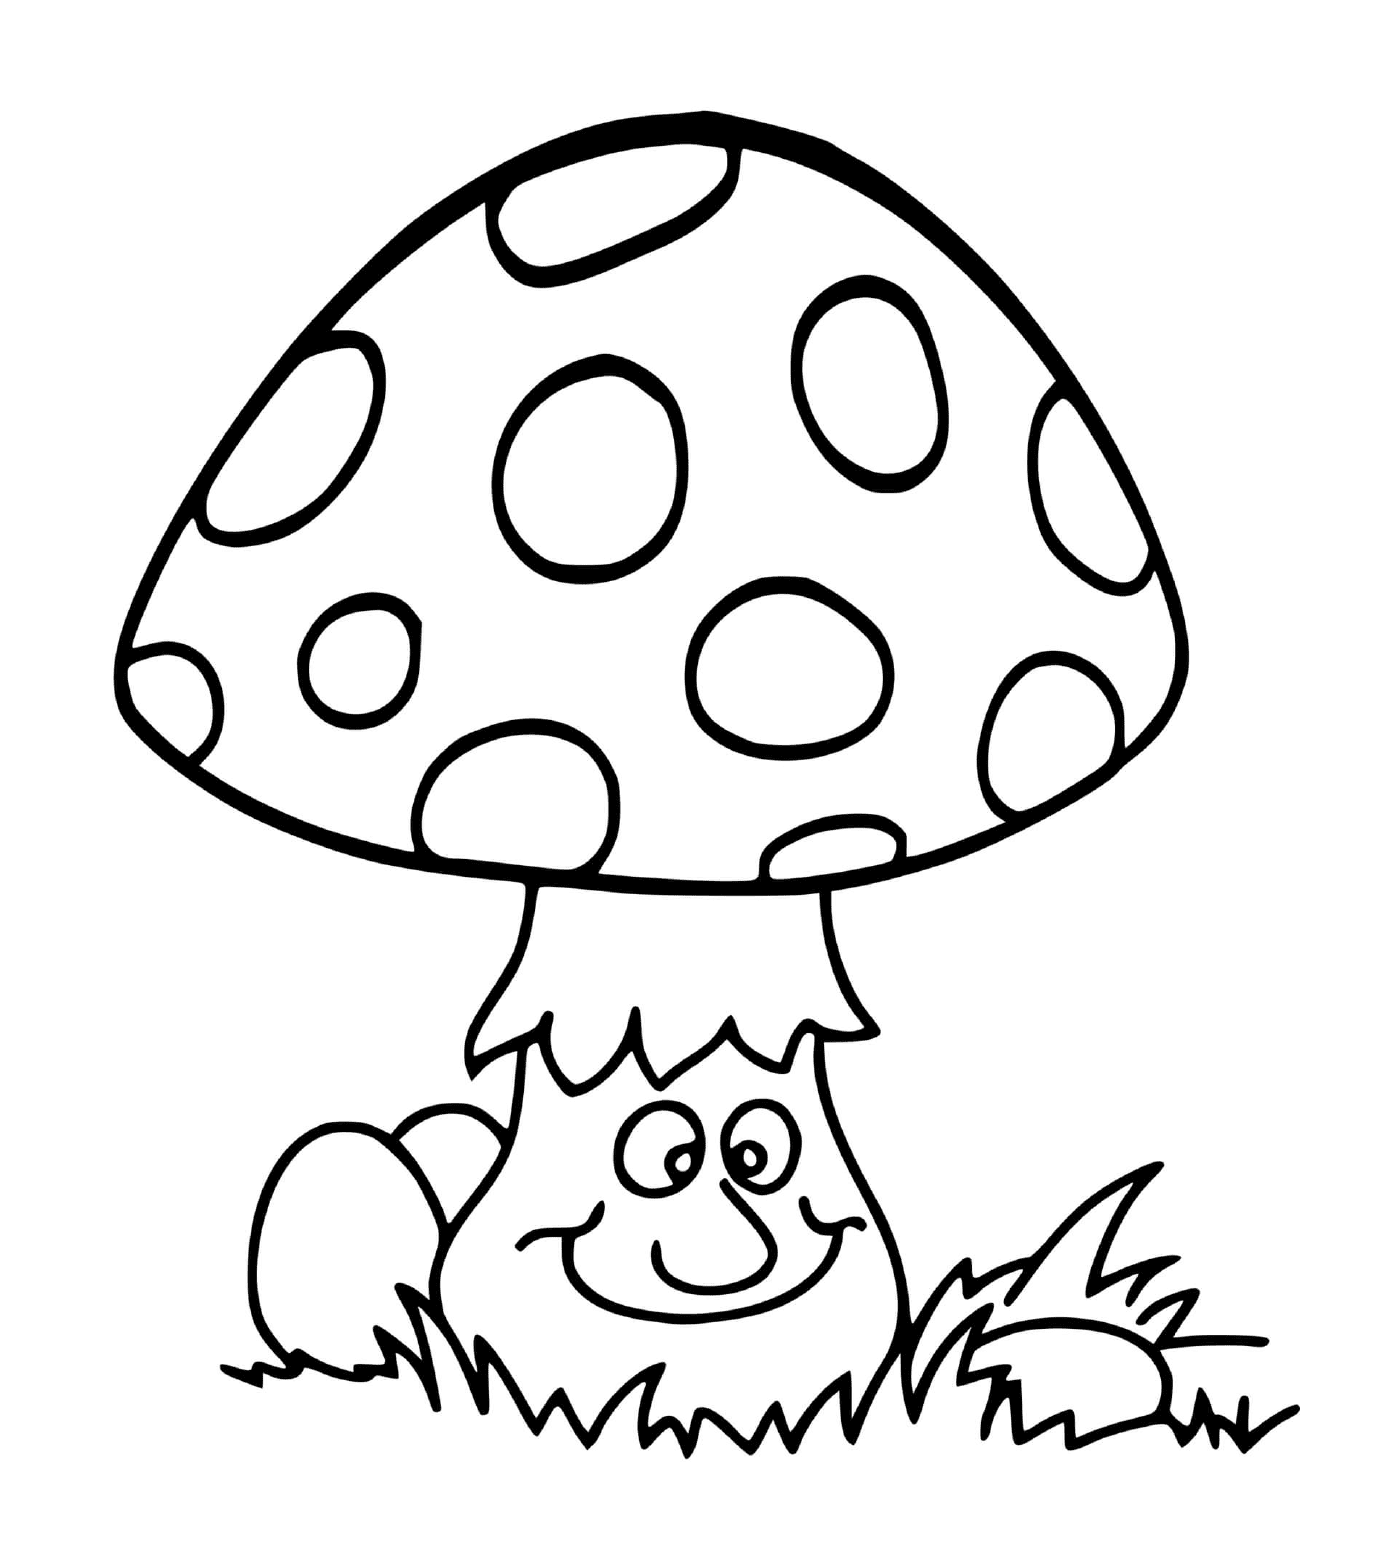  森林里的阿曼特蘑菇 